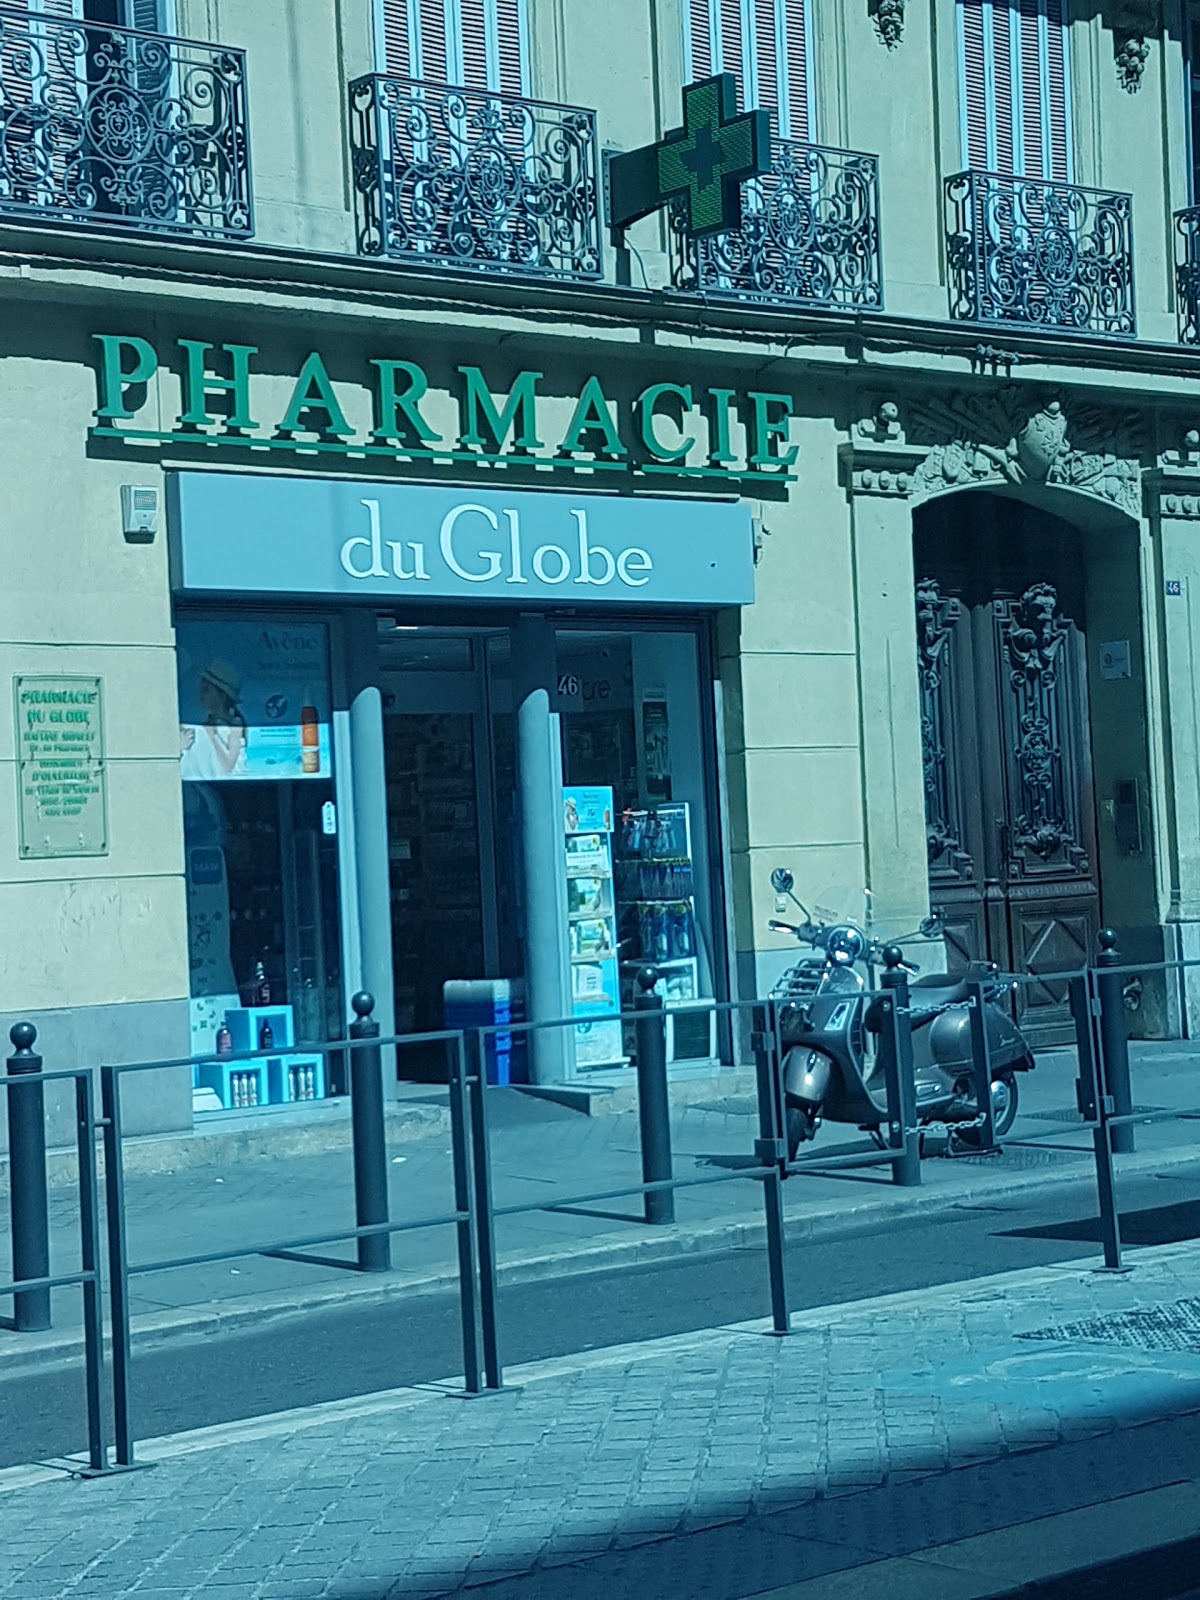 Pharmacie du Globe